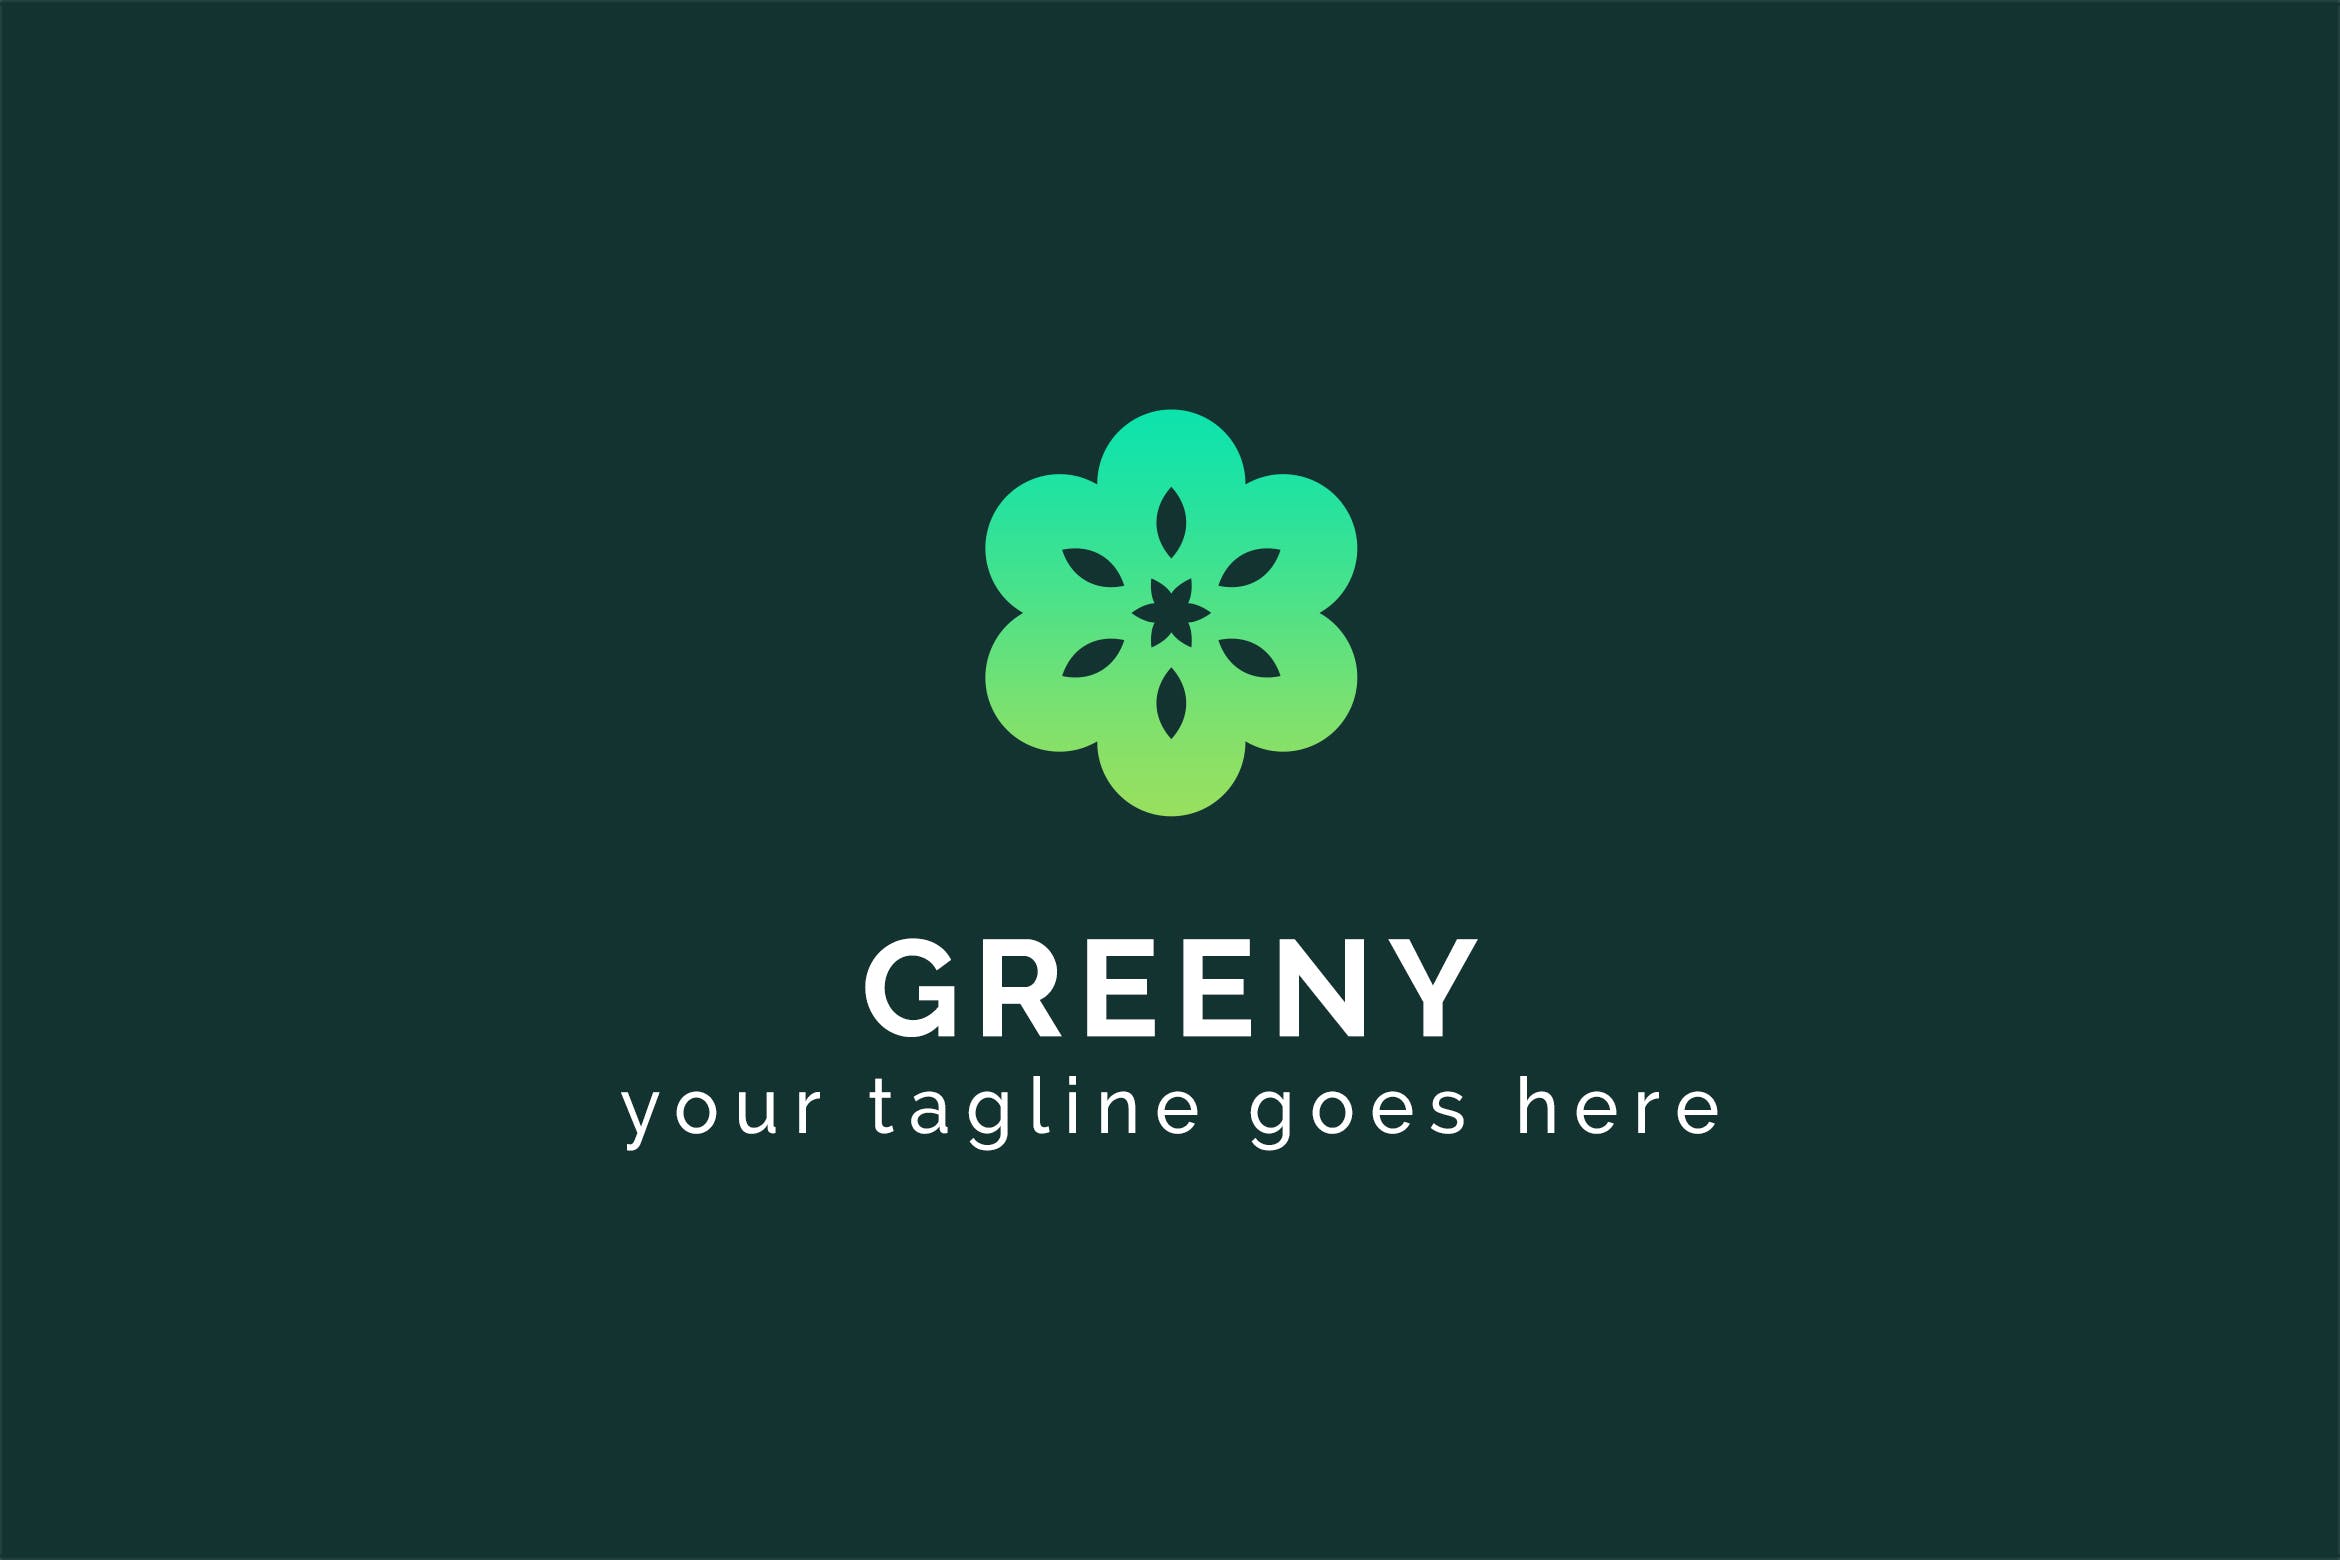 六瓣剪纸花卉图形Logo设计蚂蚁素材精选模板 Greeny – Multipurpose Logo Template插图